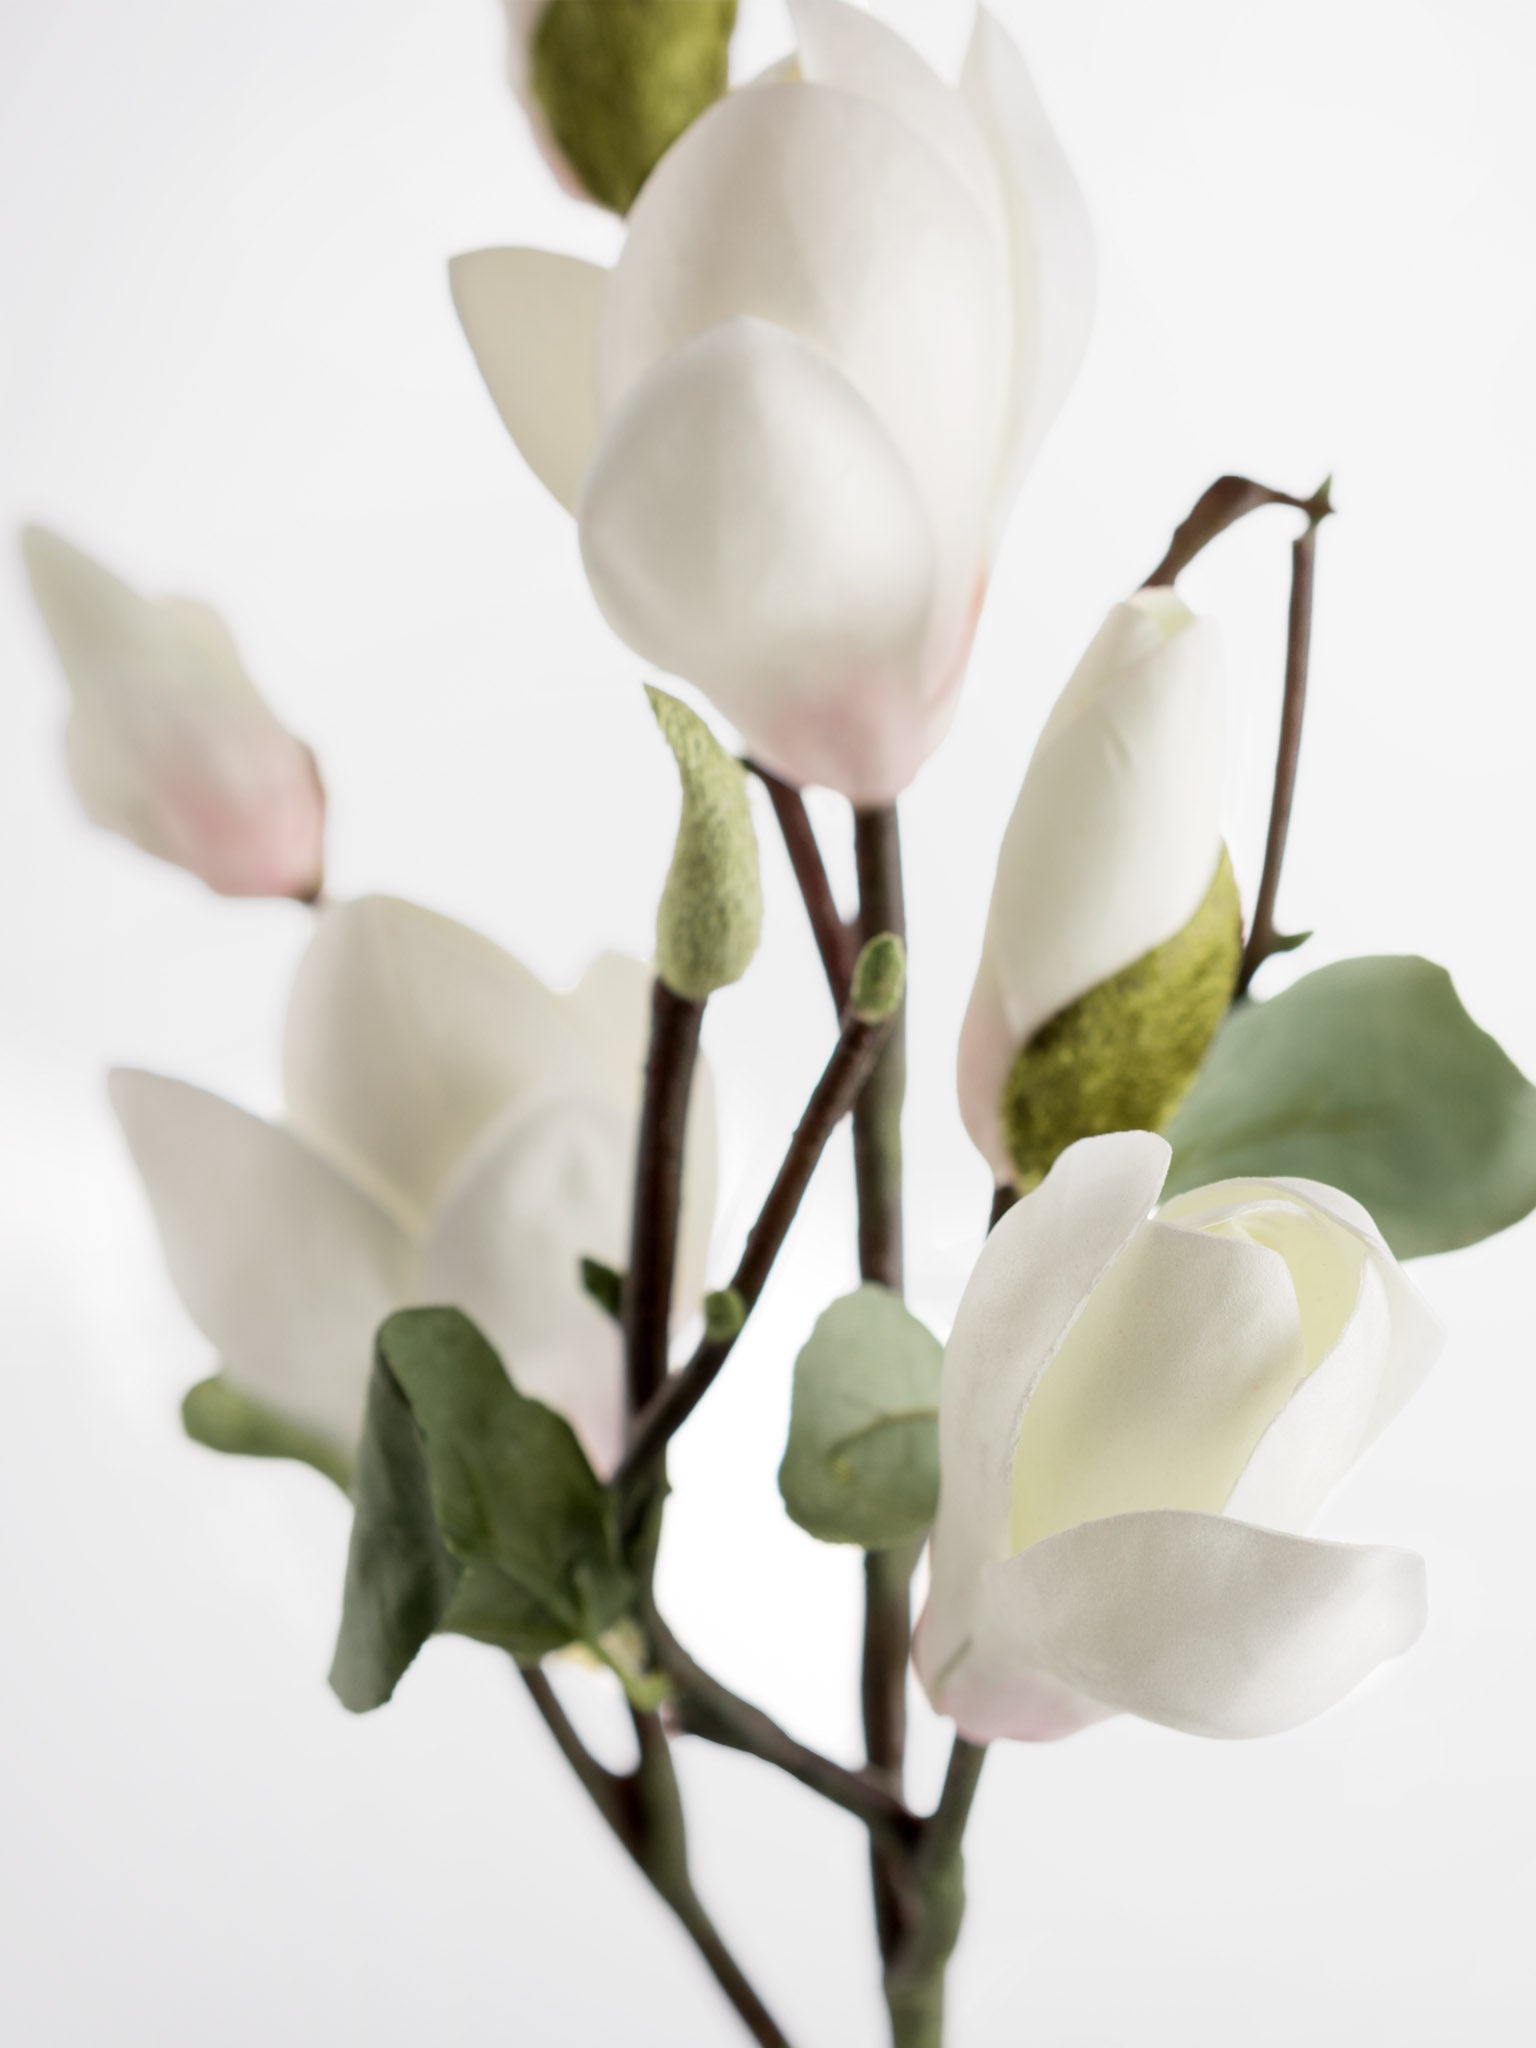 faux magnolia stem